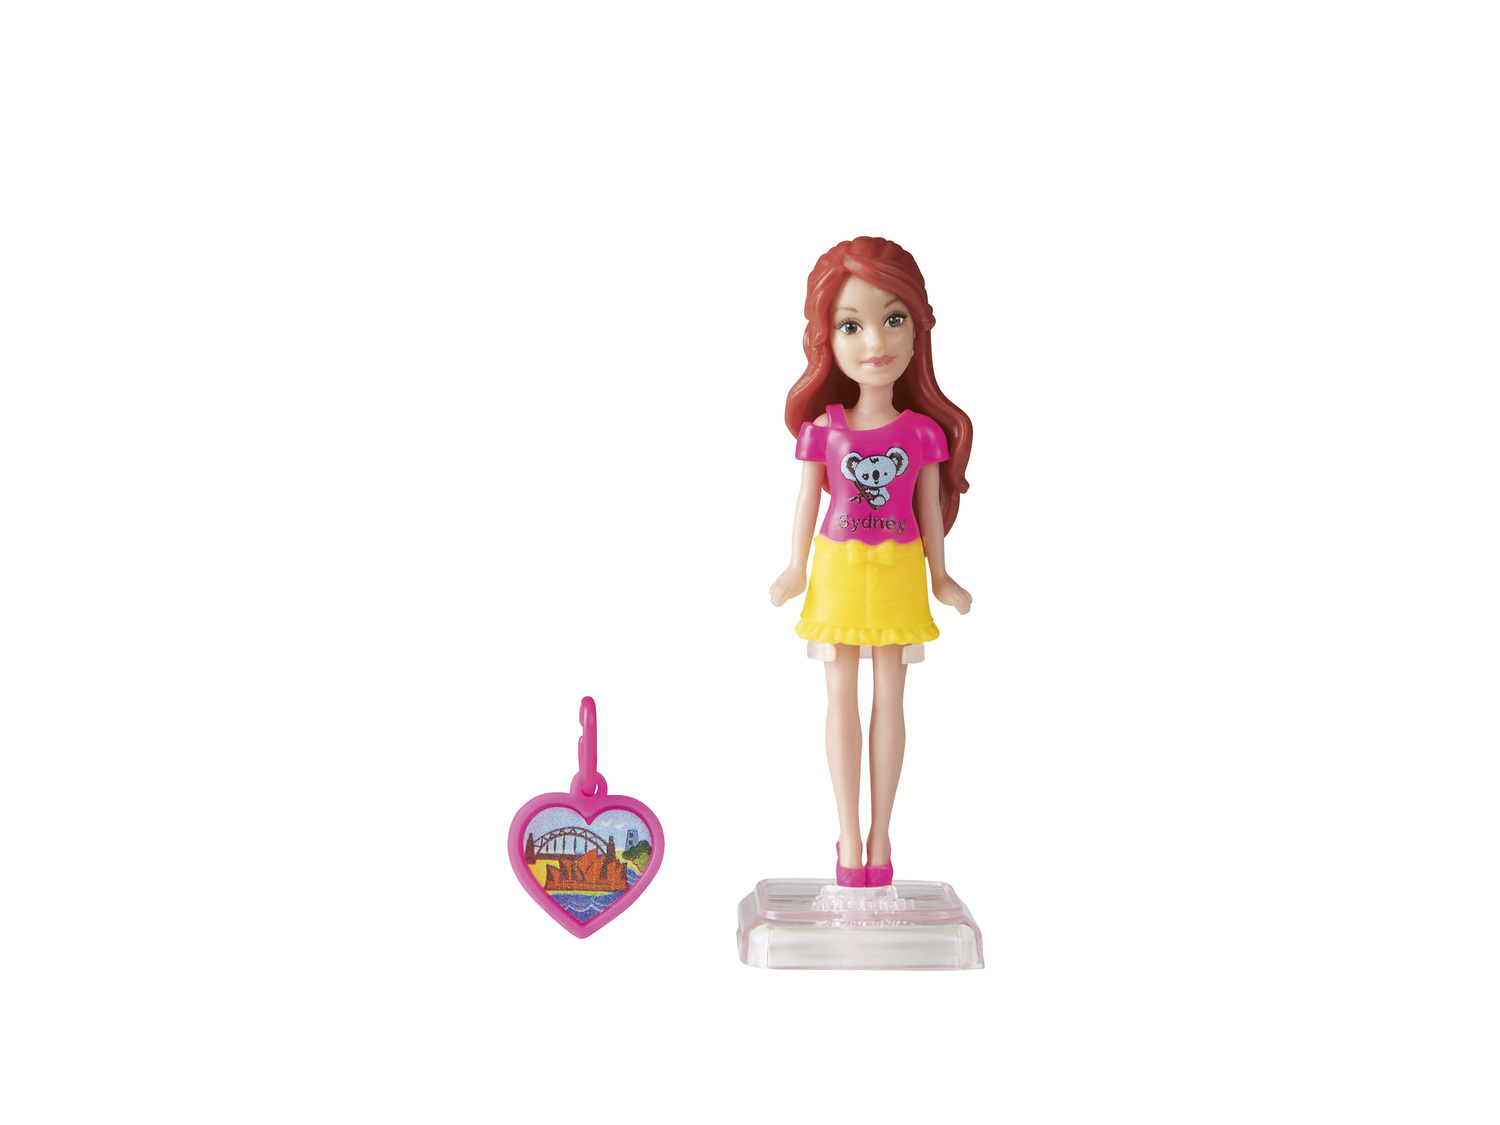 Lalka Barbie mini , cena 9,00 PLN 
różne wzory 
- wys. ok. 16 cm
Opis

- ...